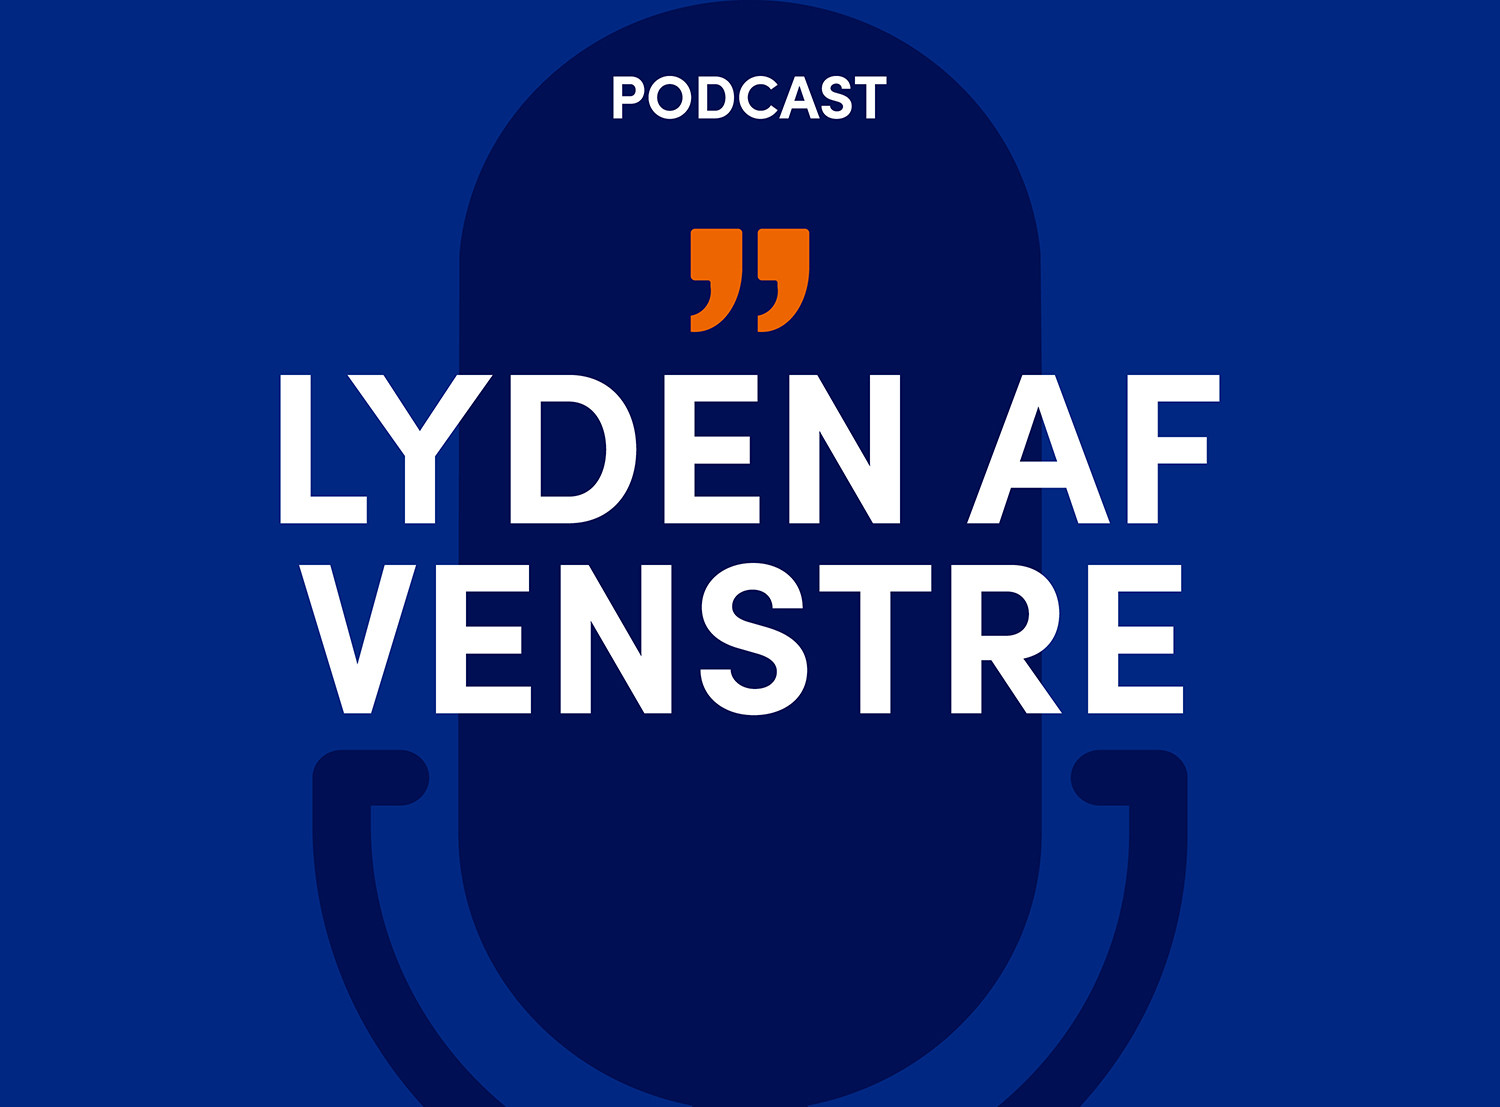 Lyt til Venstre podcast, Lyden af Venstre.